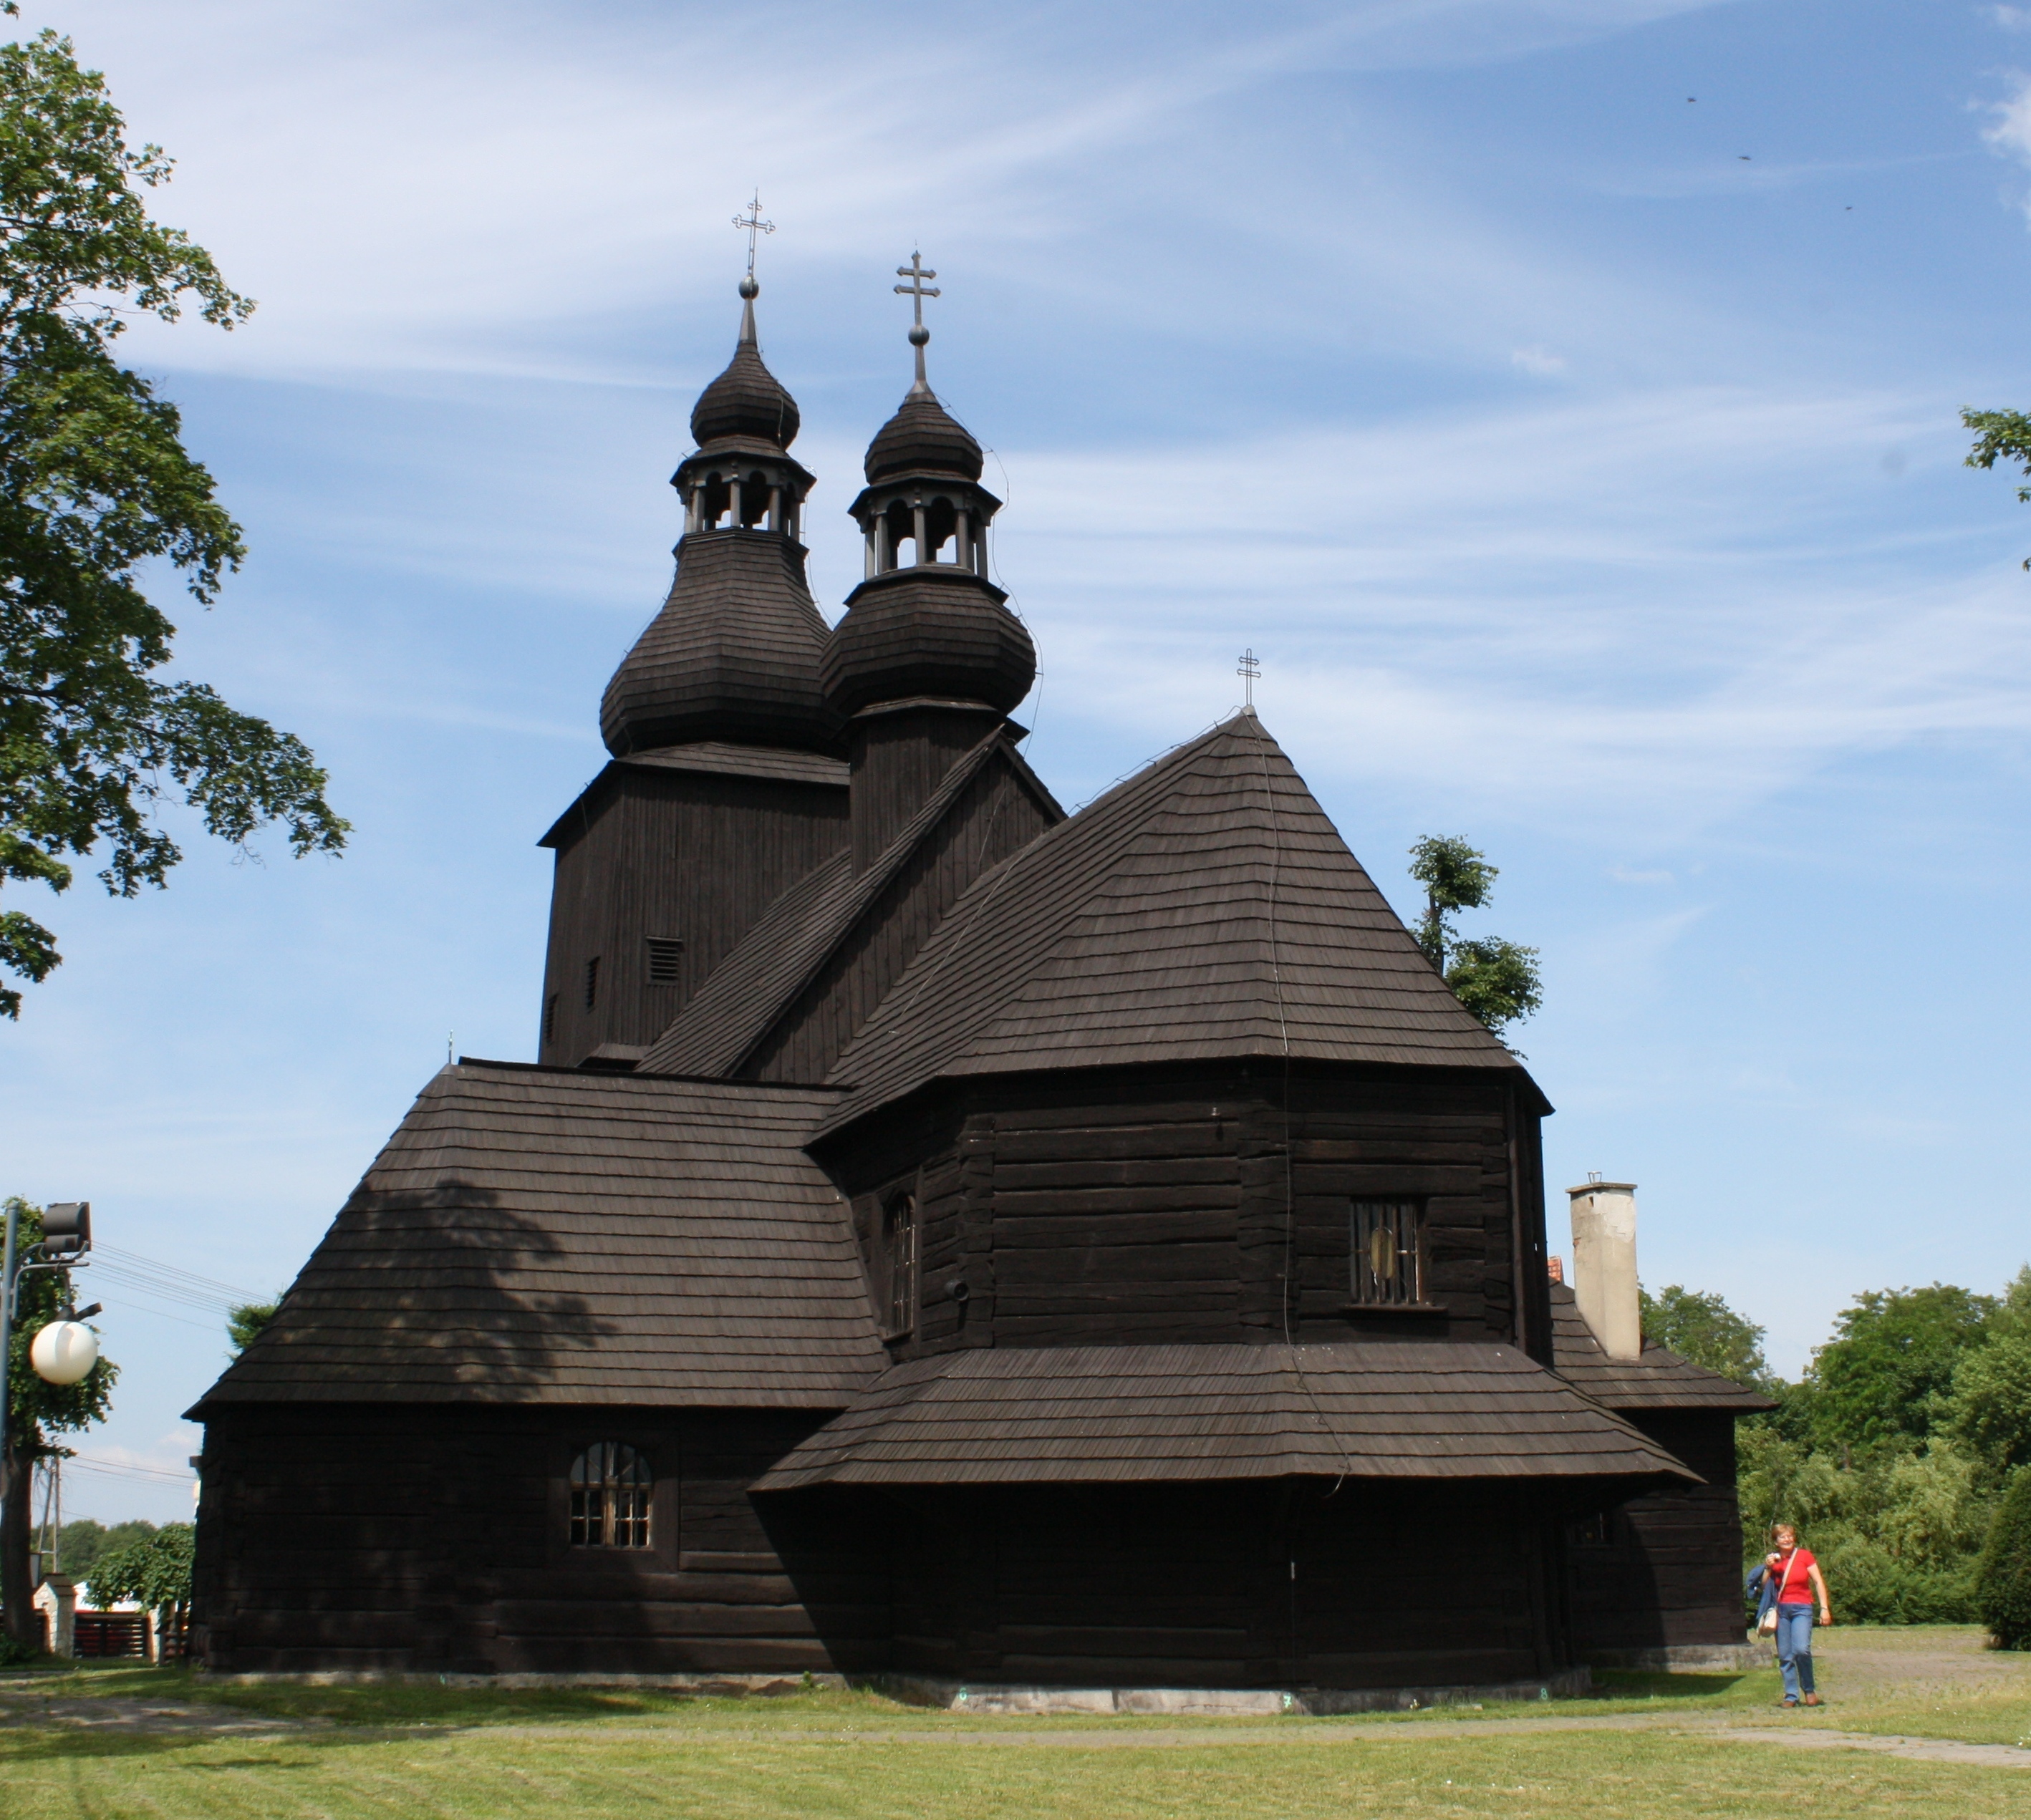 Kościół drewniany z XVII w. w Borowej Wsi (Mikołów). Fot. Maria Lipok-Bierwiaczonek, 2011.